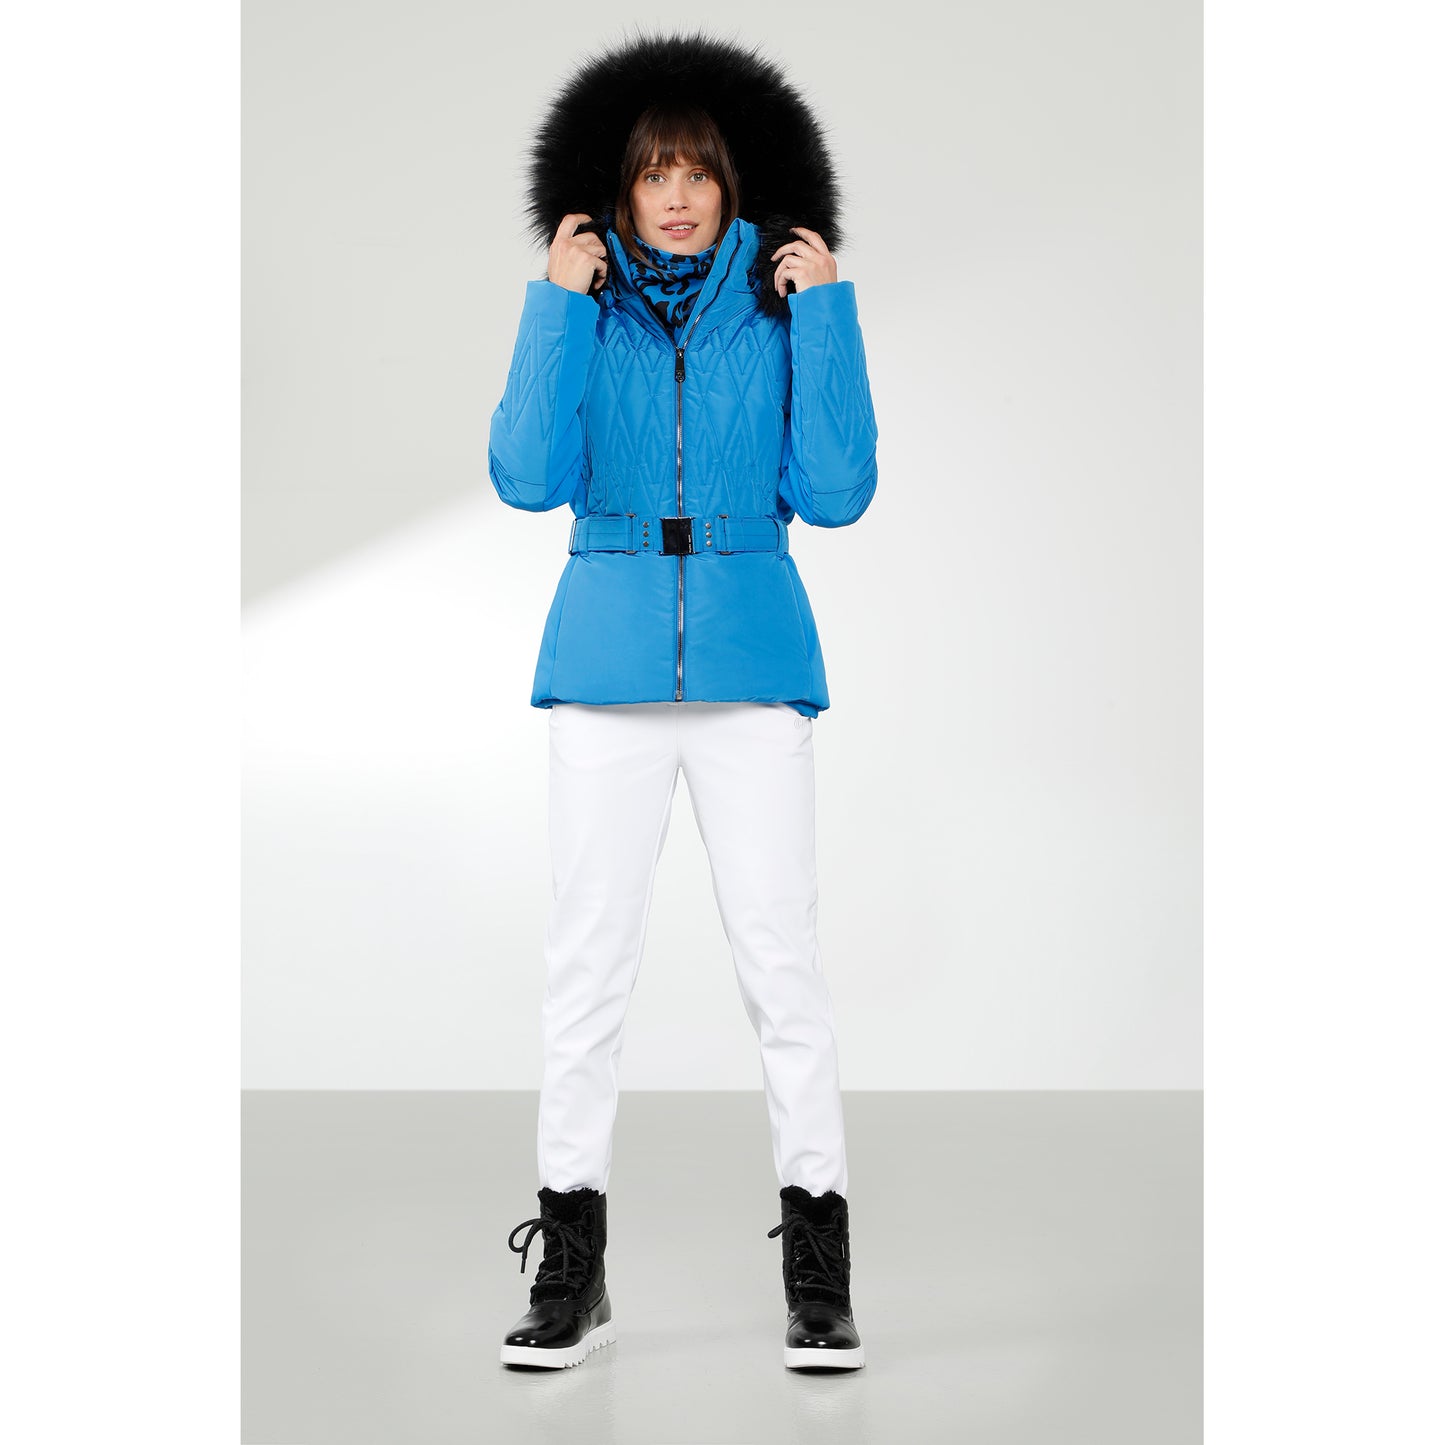 Poivre Blanc Women's Hybrid Ski jacket in White 1003 – Poivre